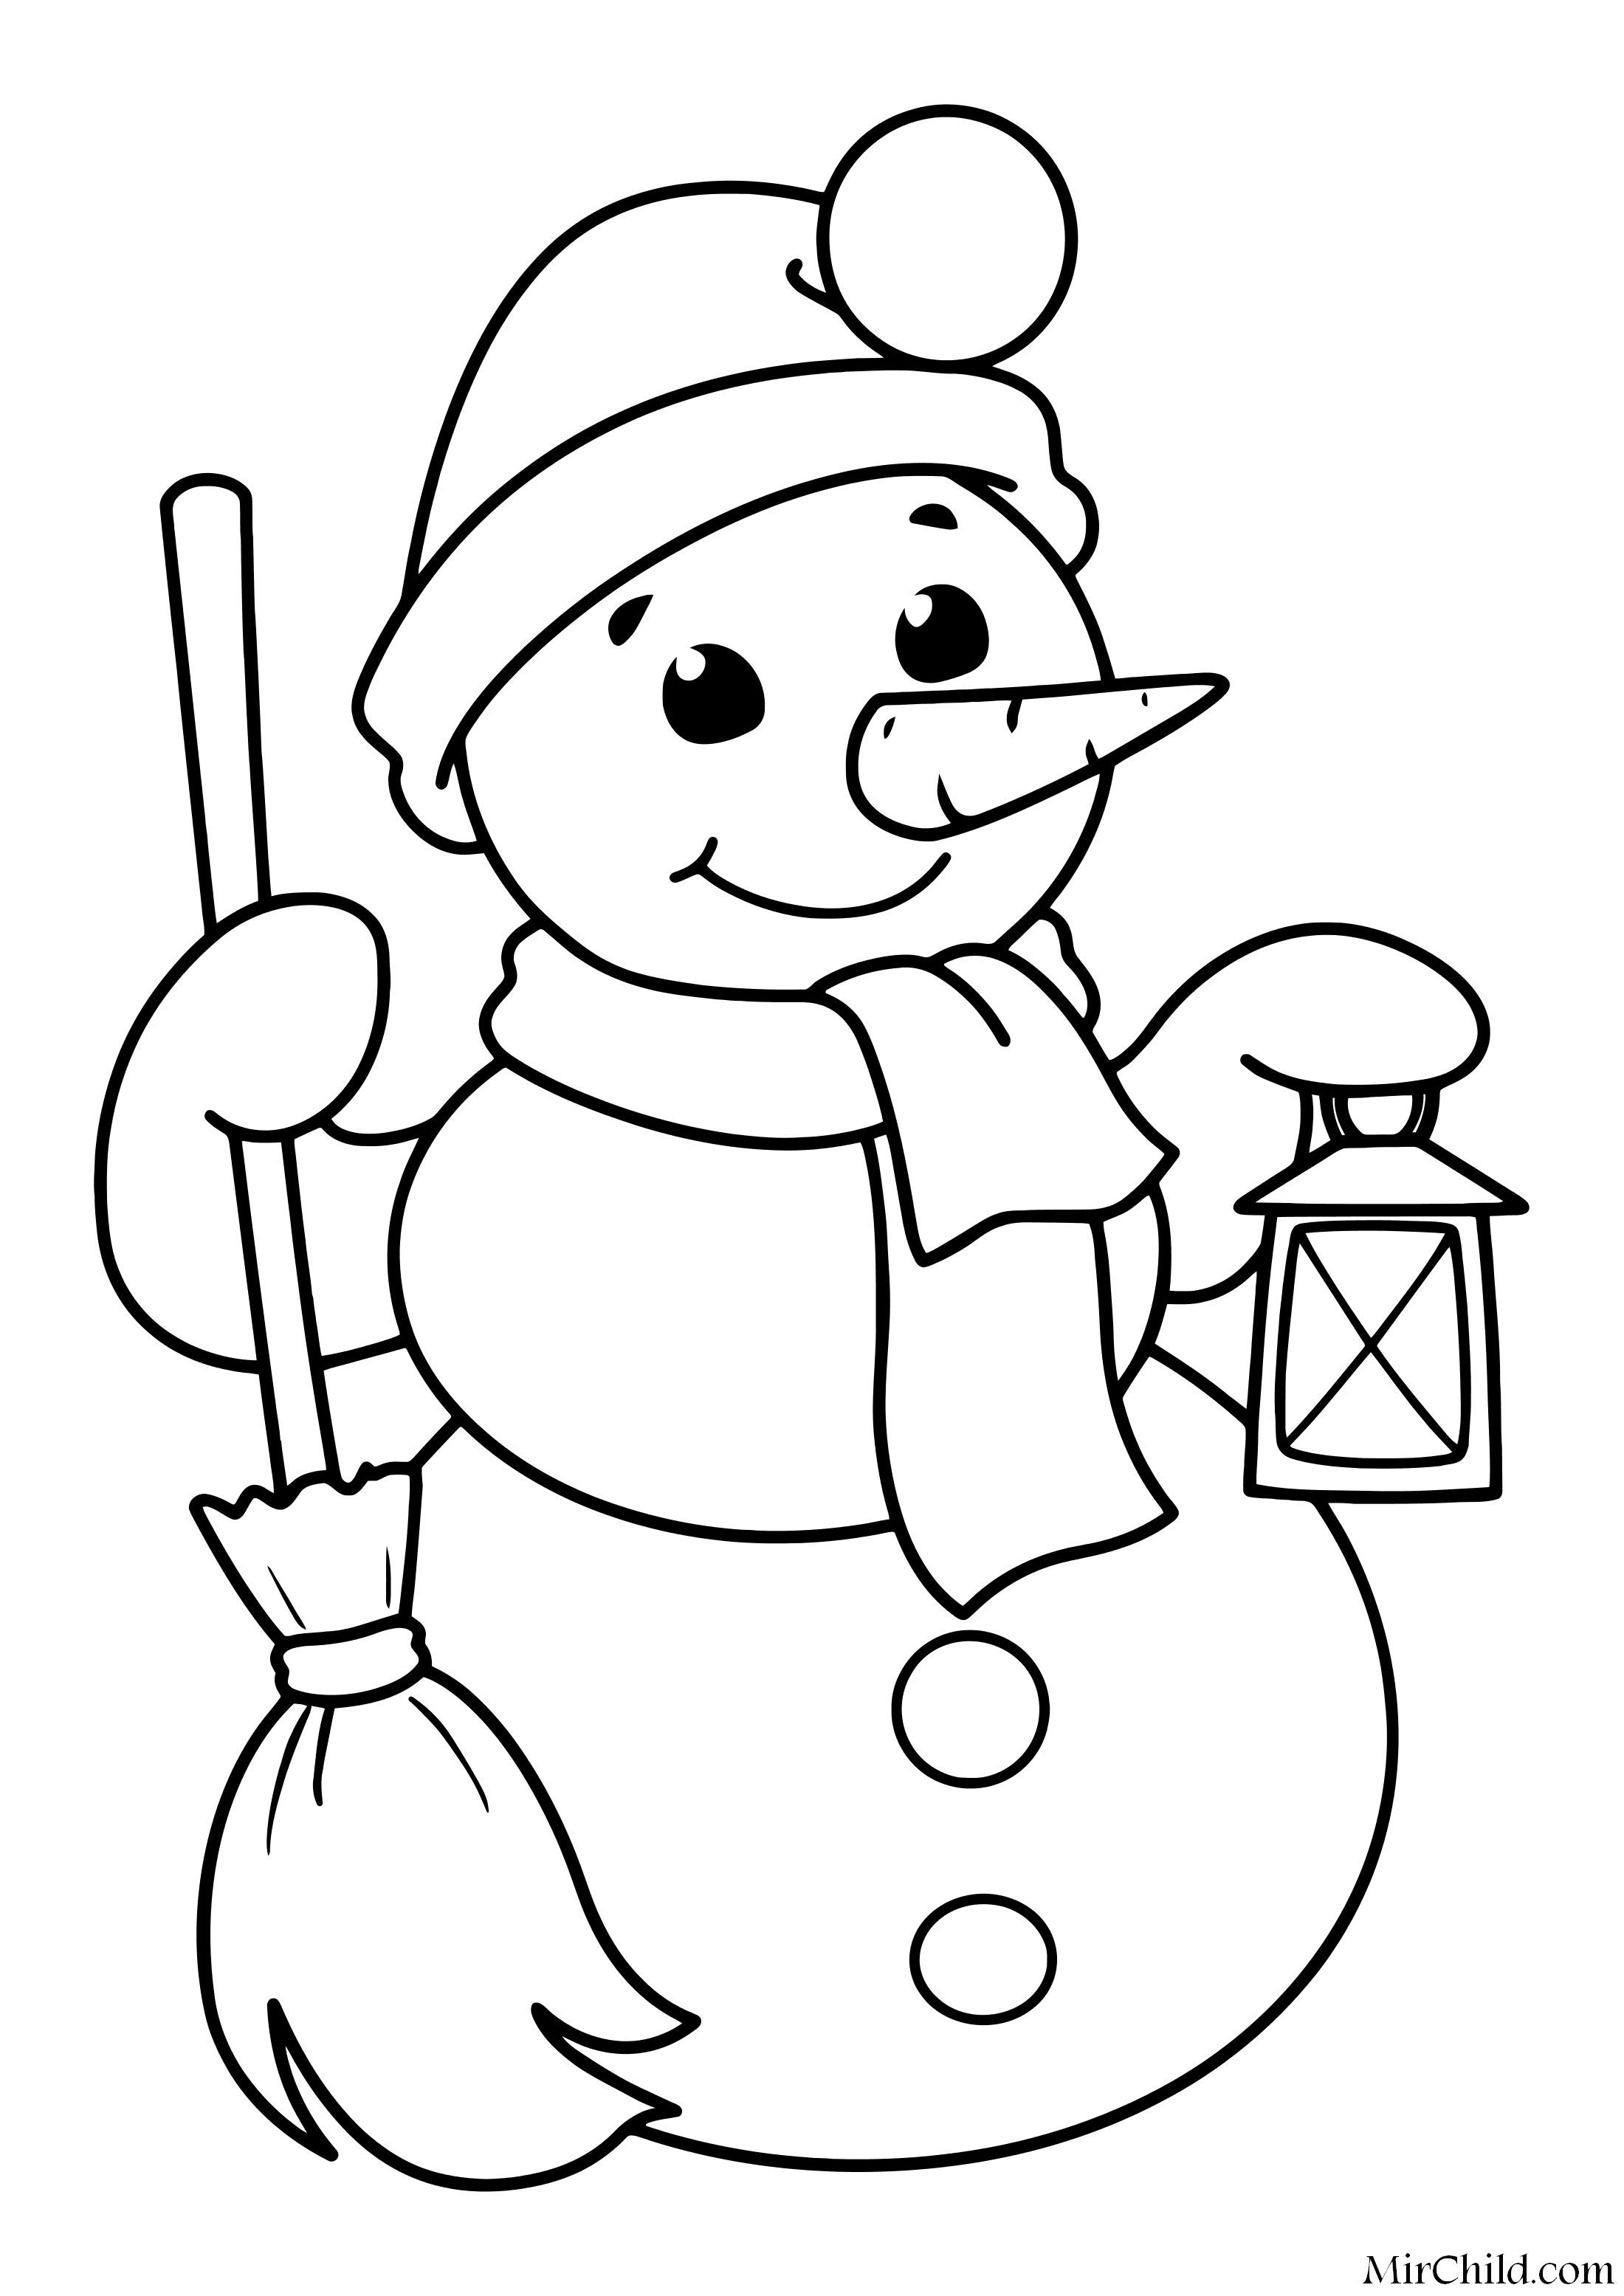 Раскраска для детей дед мороз и снегурочка